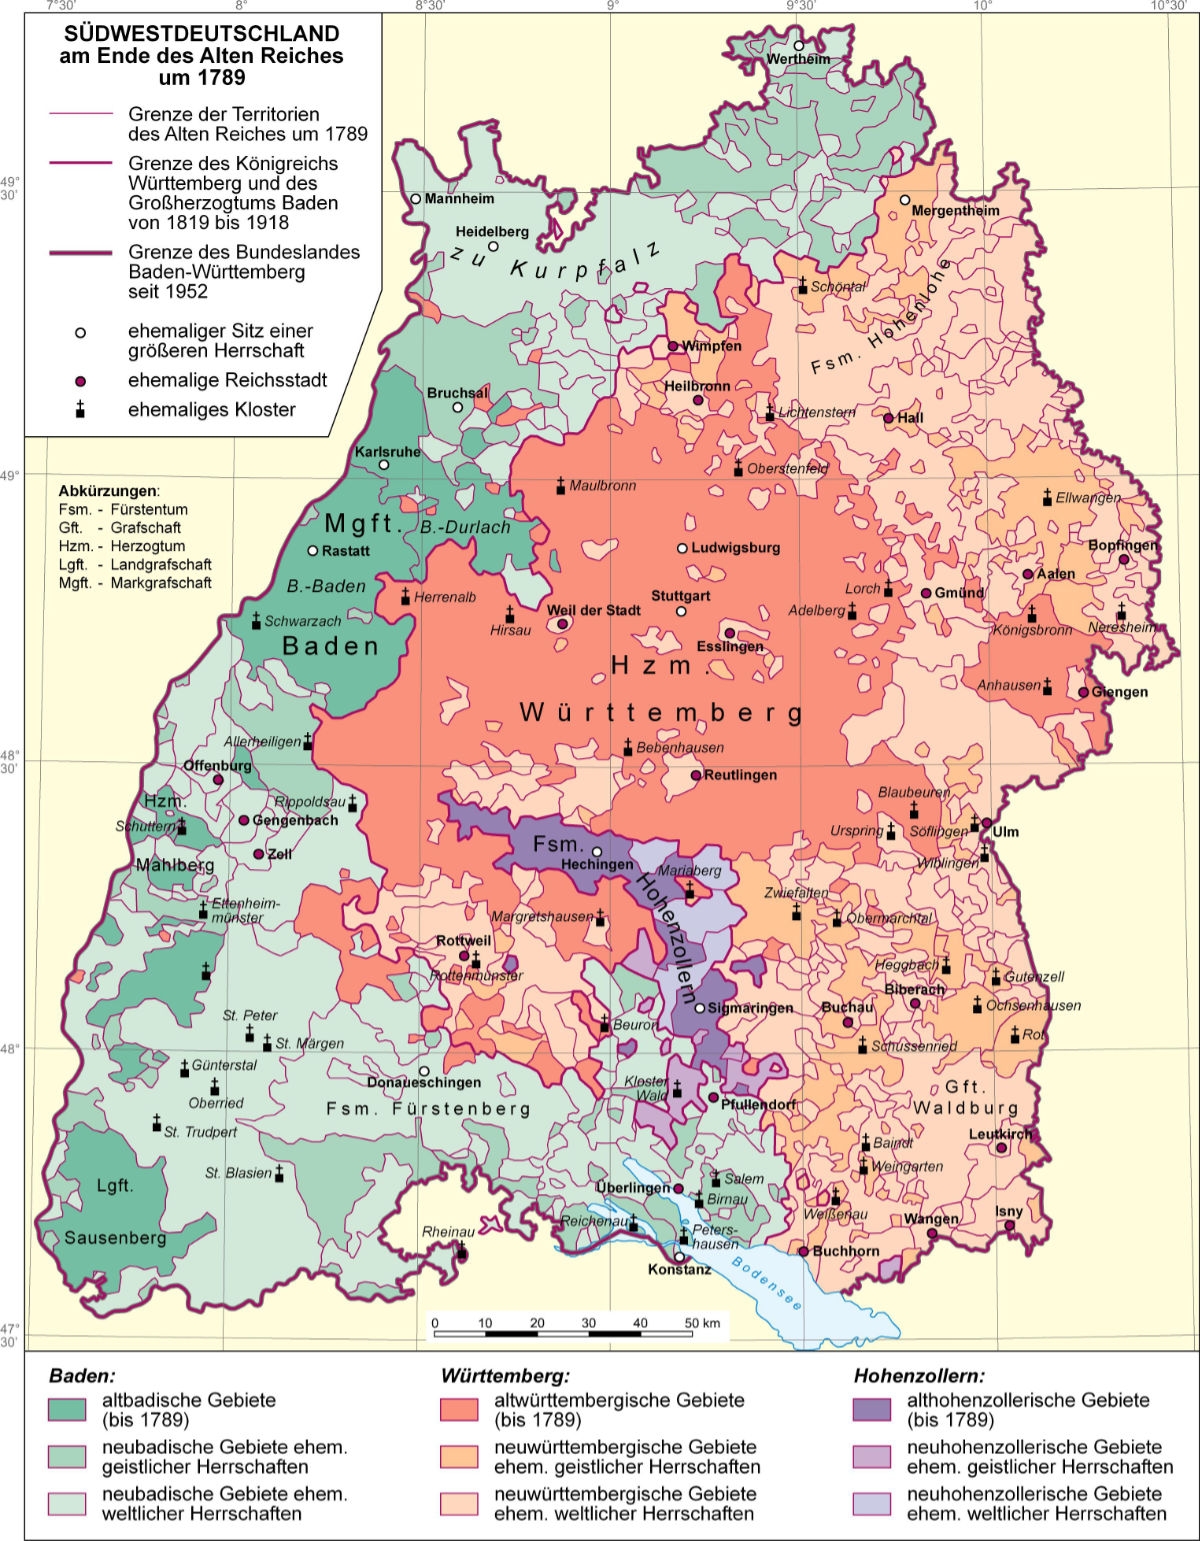 Südwestdeutschland am Ende des Alten Reiches (um 1789)